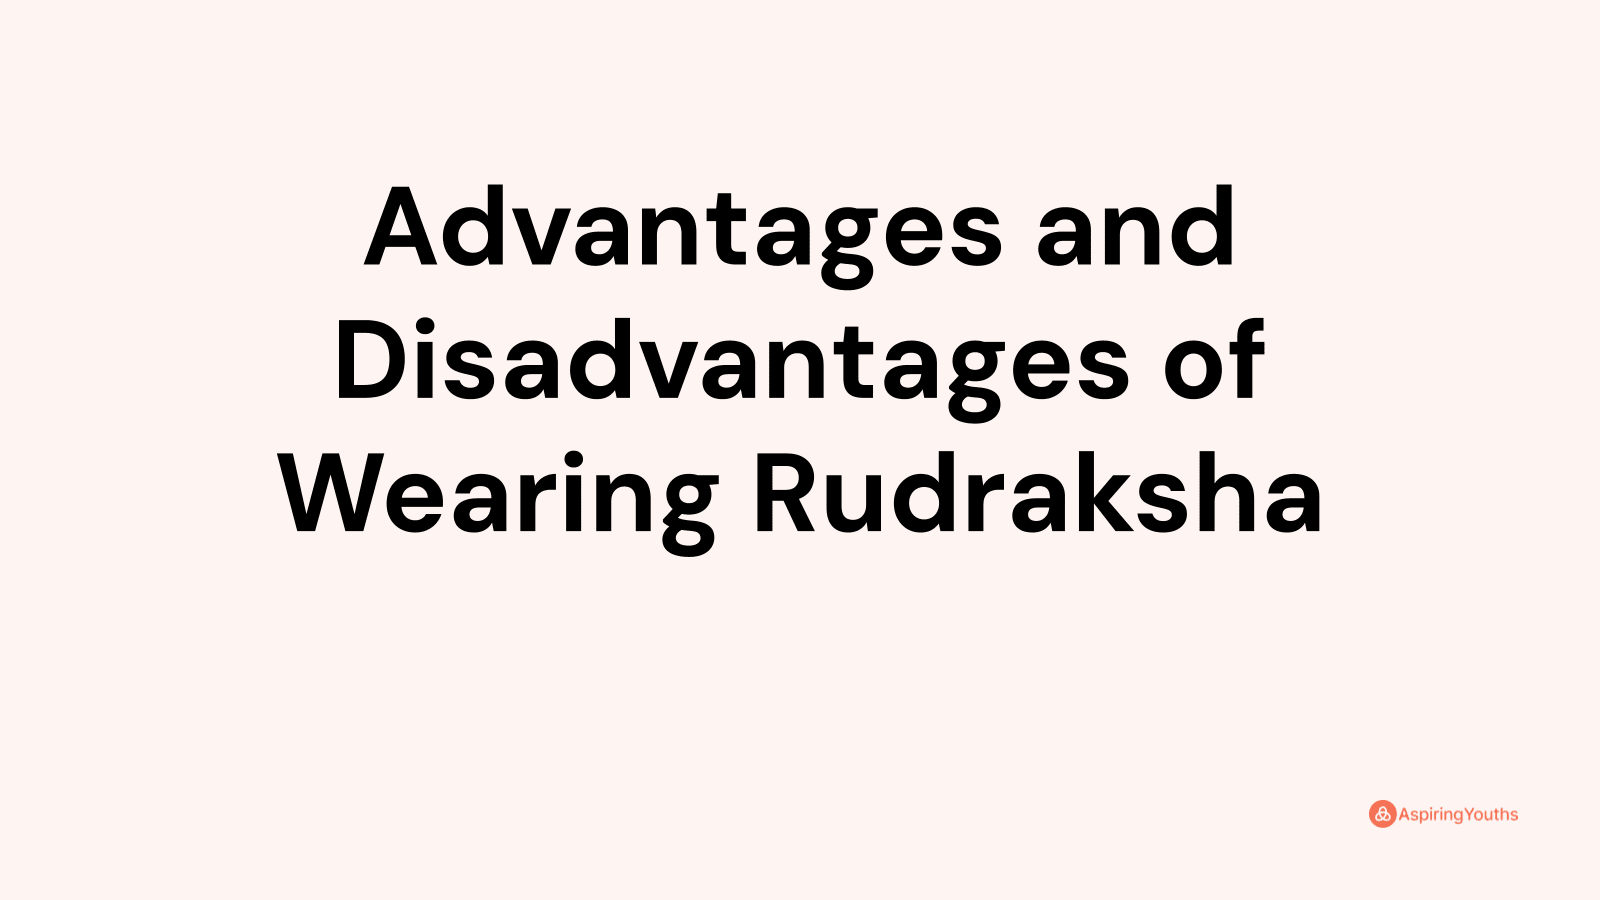 Advantages and disadvantages of Wearing Rudraksha